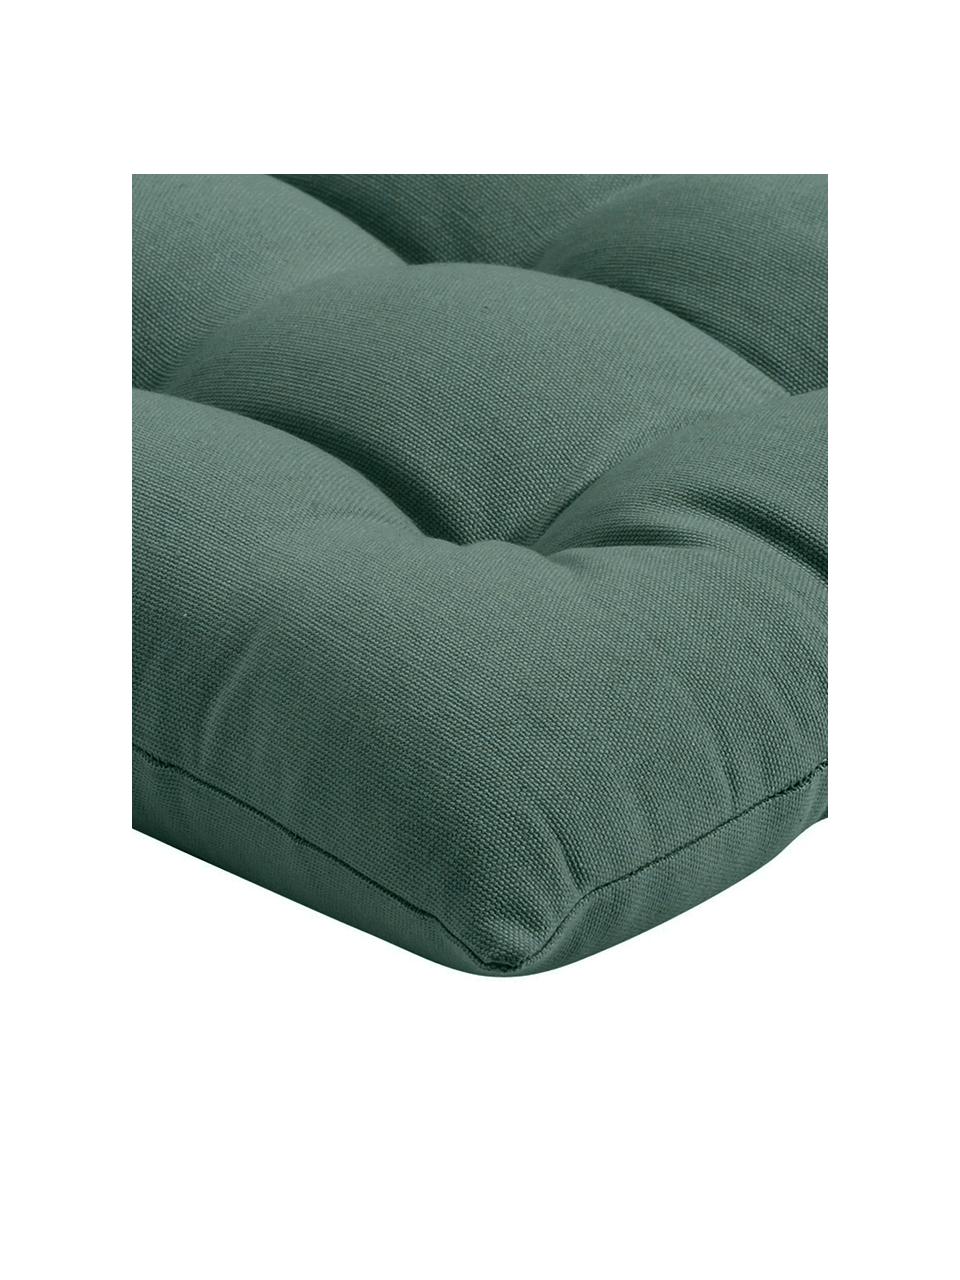 Cojín para silla de algodón Ava, Funda: 100% algodón, Verde oscuro, An 40 x L 40 cm